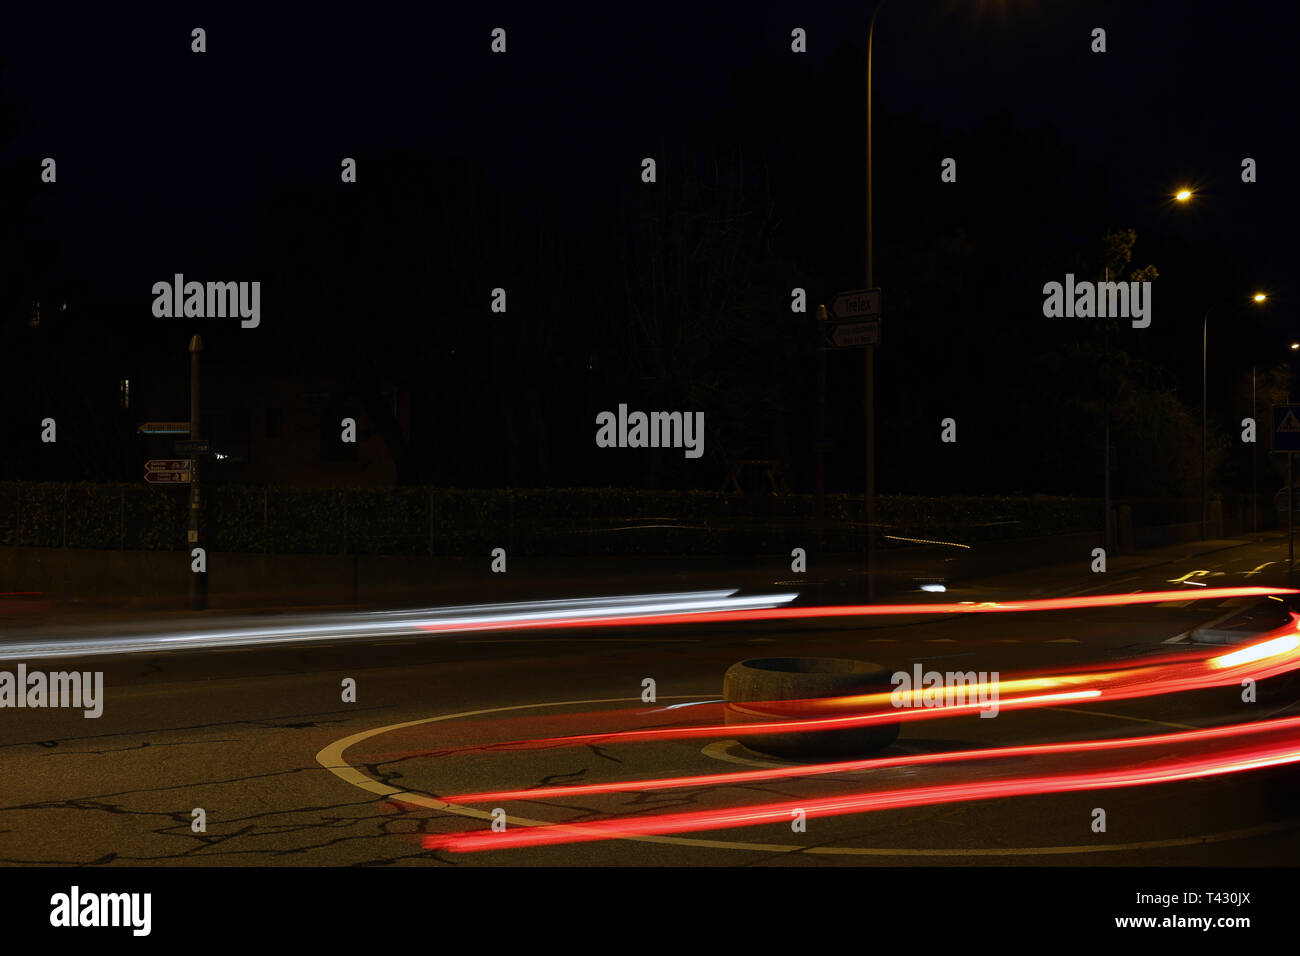 Foto astratte di traffico notturno. È possibile vedere la luce colorata linee in un ambiente buio. Fotografato a Nyon, Svizzera durante la primavera. Foto Stock